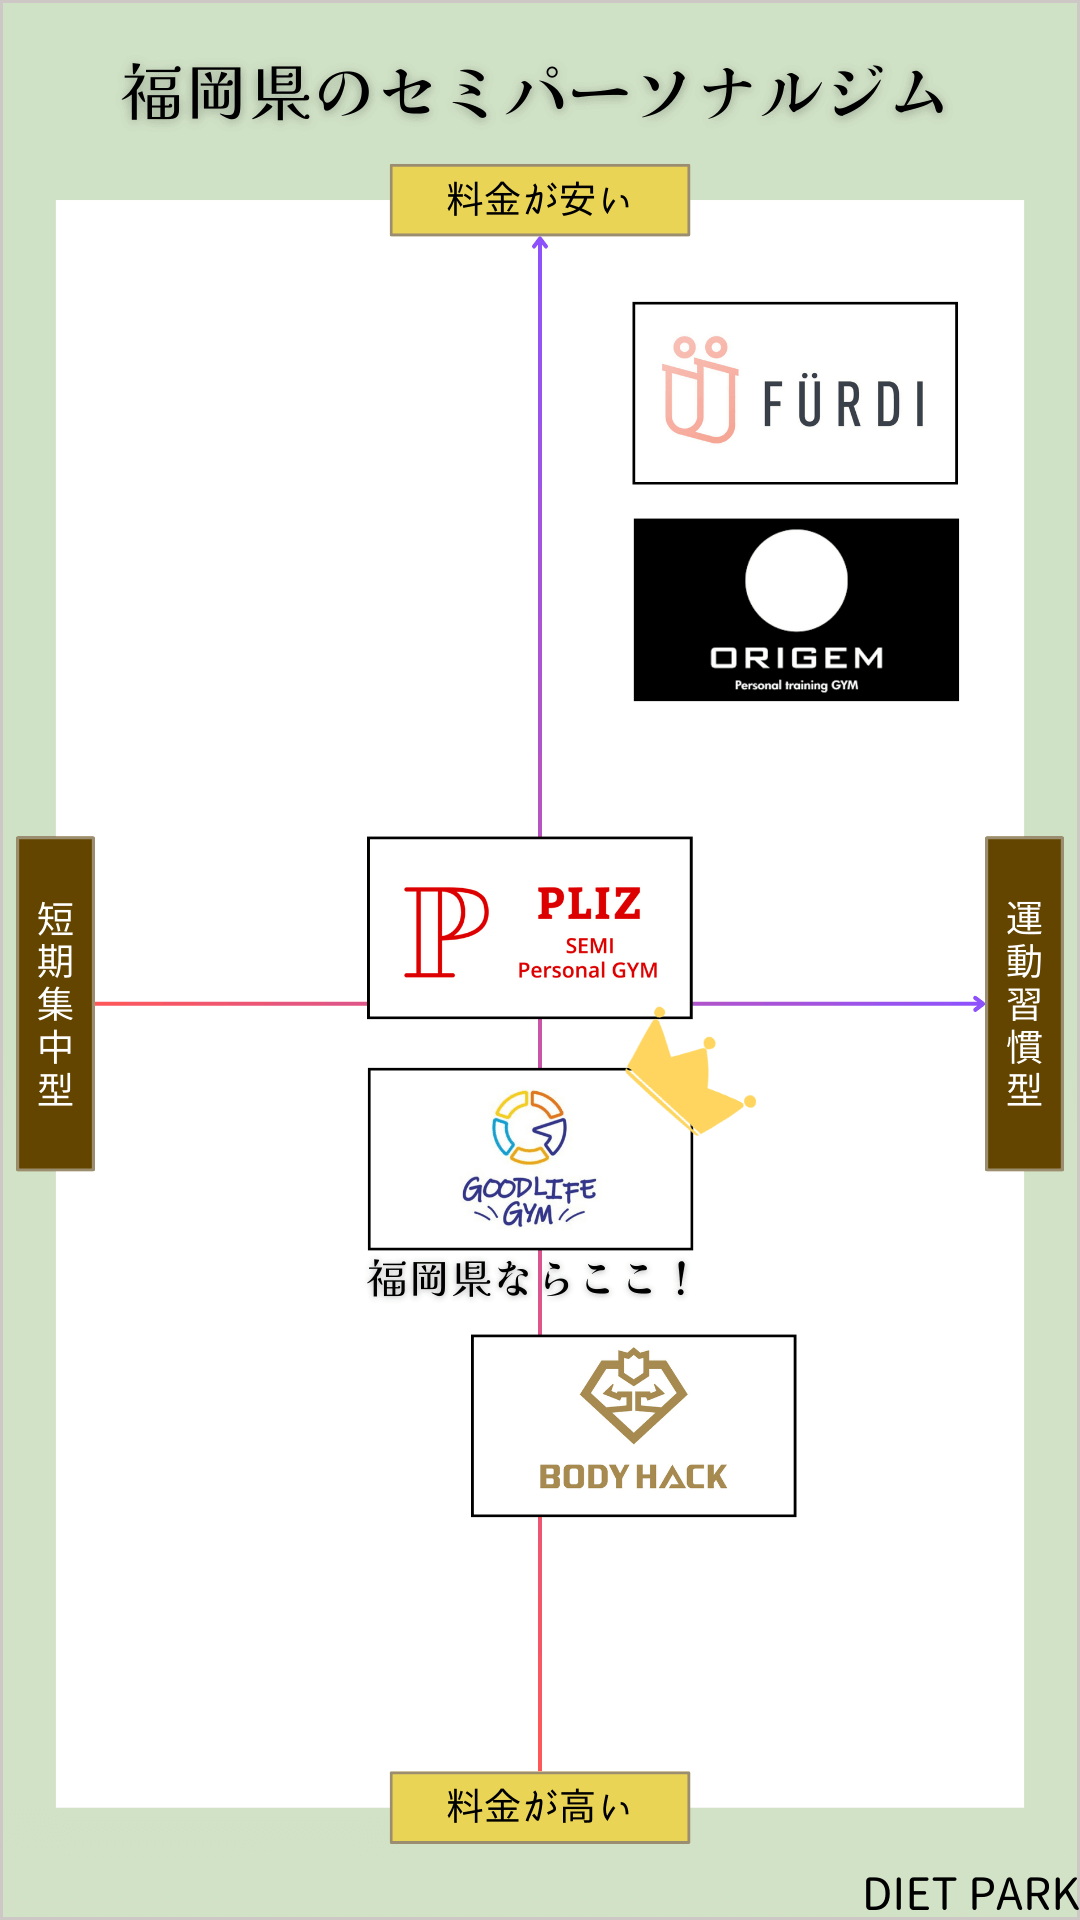 福岡のセミパーソナルジム5選の相関図